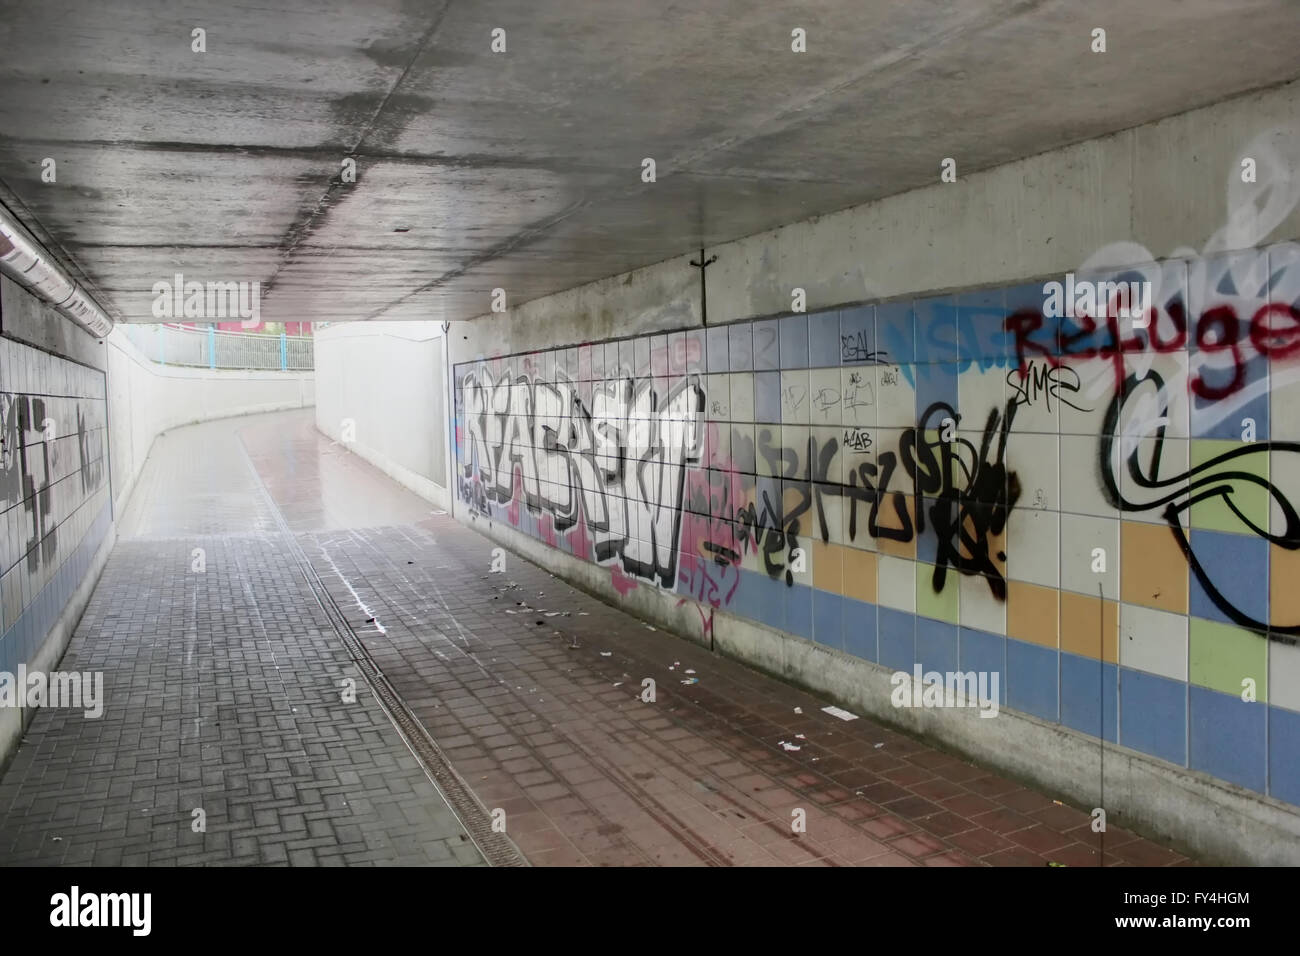 Unterführung mit Graffiti und Müll unter einer Eisenbahn in Greifswald, Mecklenburg-Vorpommern, Deutschland. Bild wurde erstellt mit Stockfoto